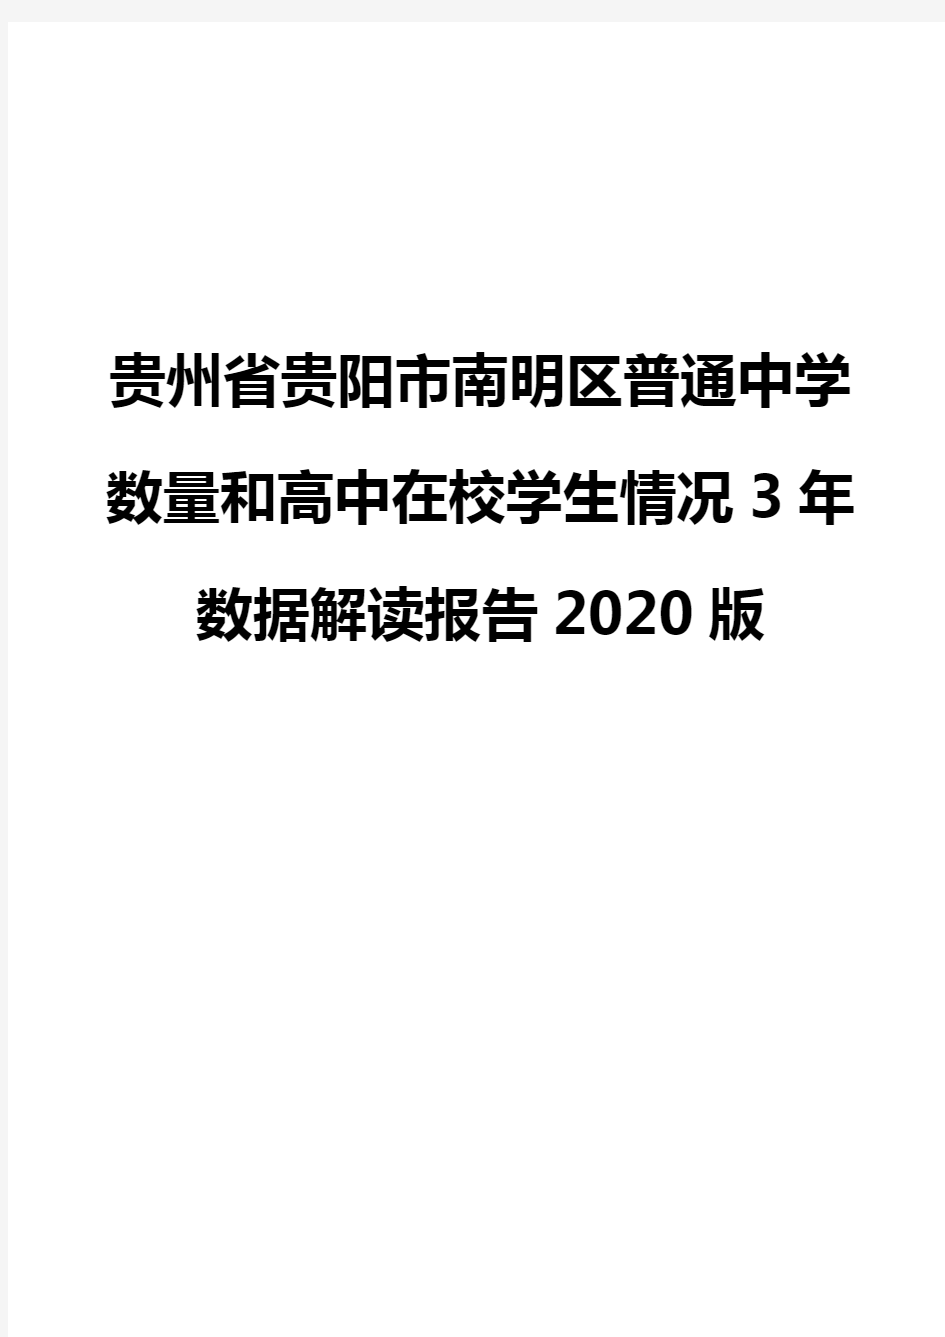 贵州省贵阳市南明区普通中学数量和高中在校学生情况3年数据解读报告2020版